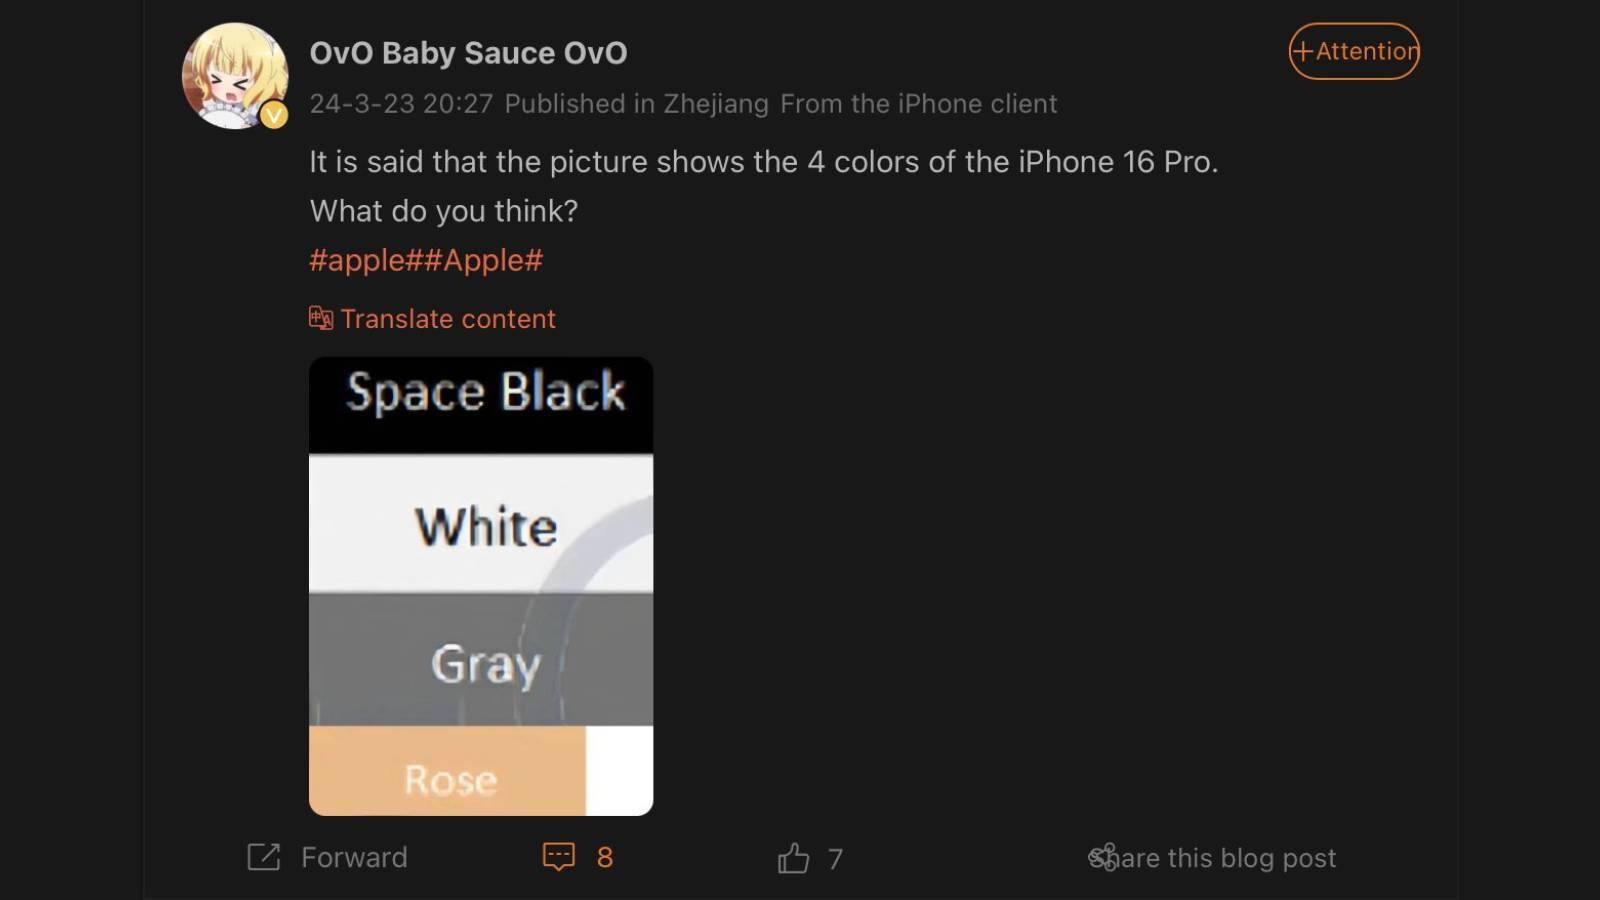 Il reste peu de surprises sur l’iPhone 16 alors que des images d’unités factices, de coques et de nouvelles variantes de couleurs ont été divulguées